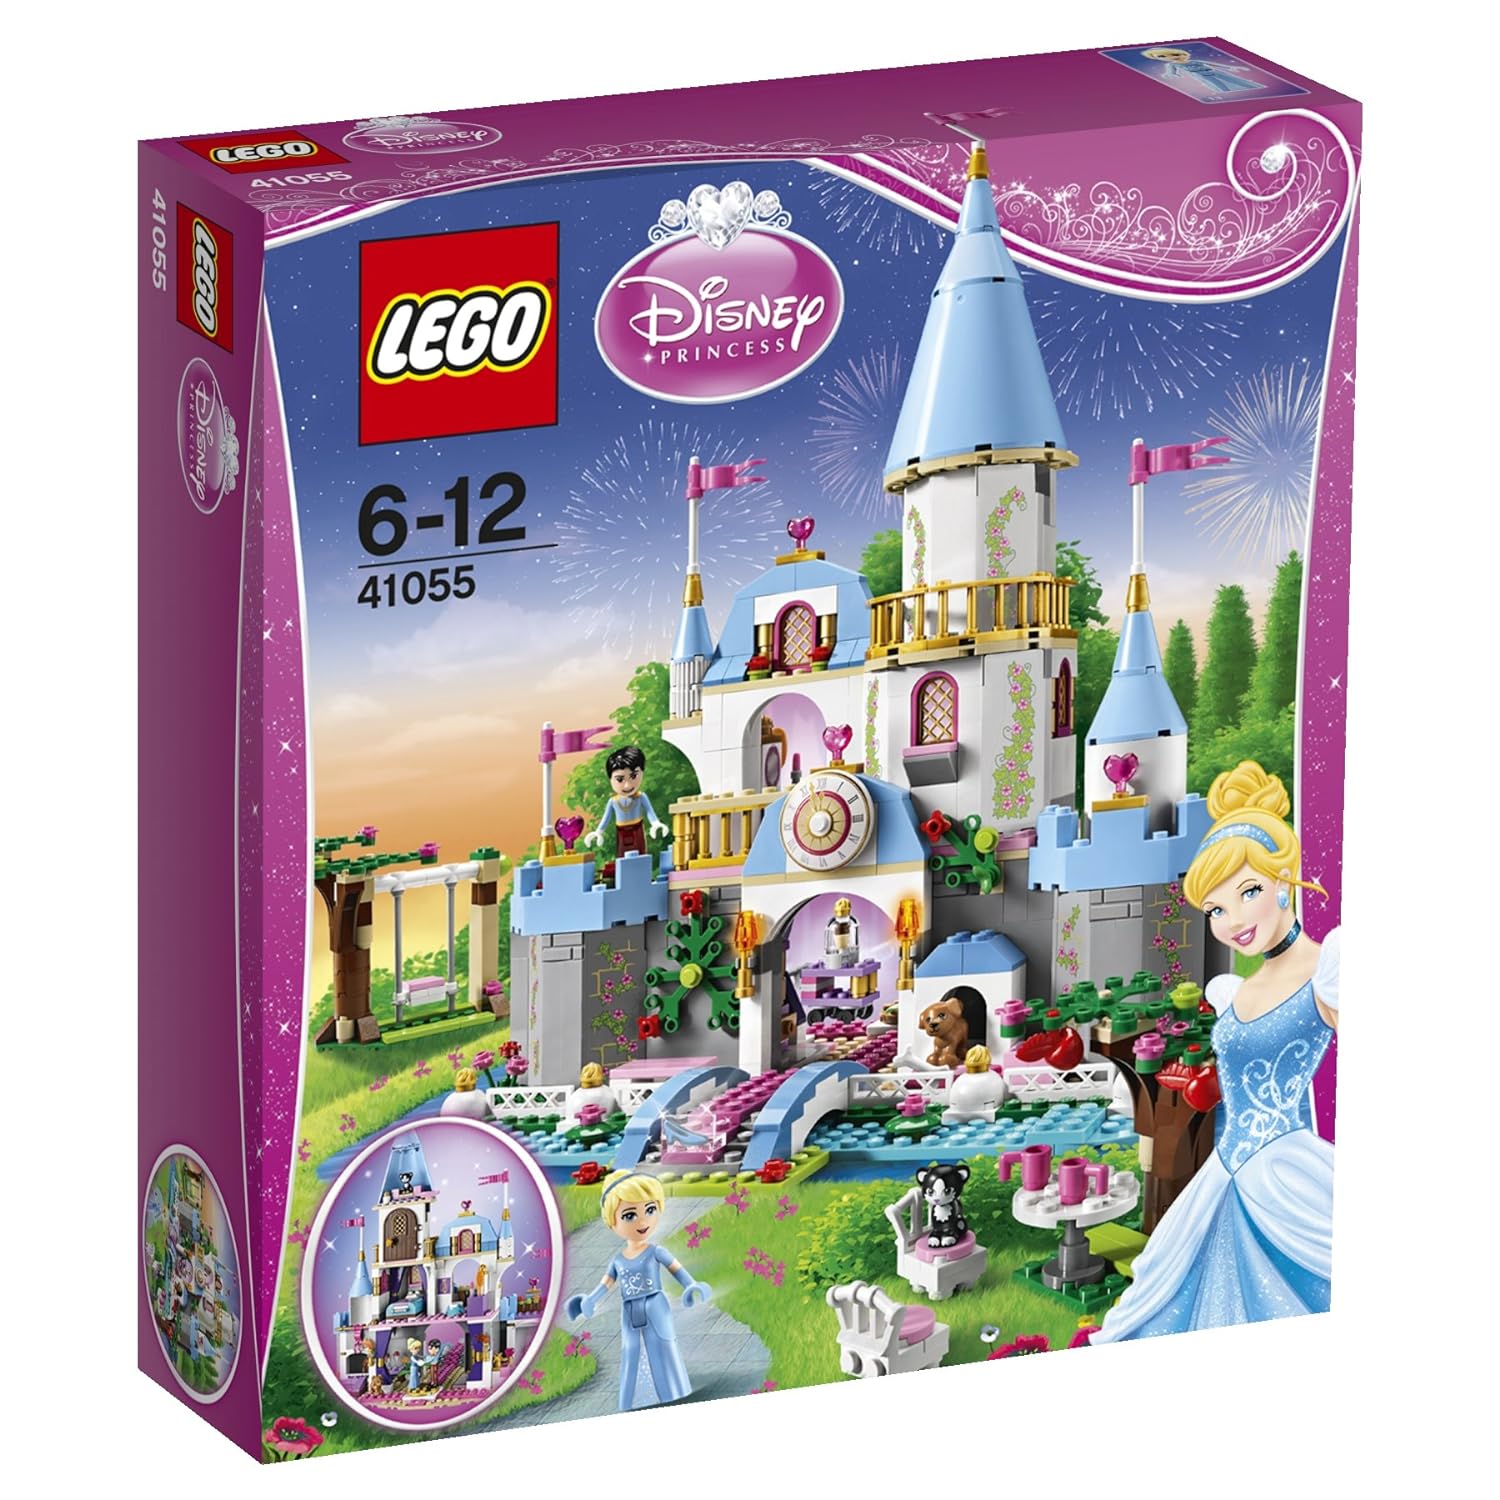 LEGO 41055 - Disney Princess Cinderellas